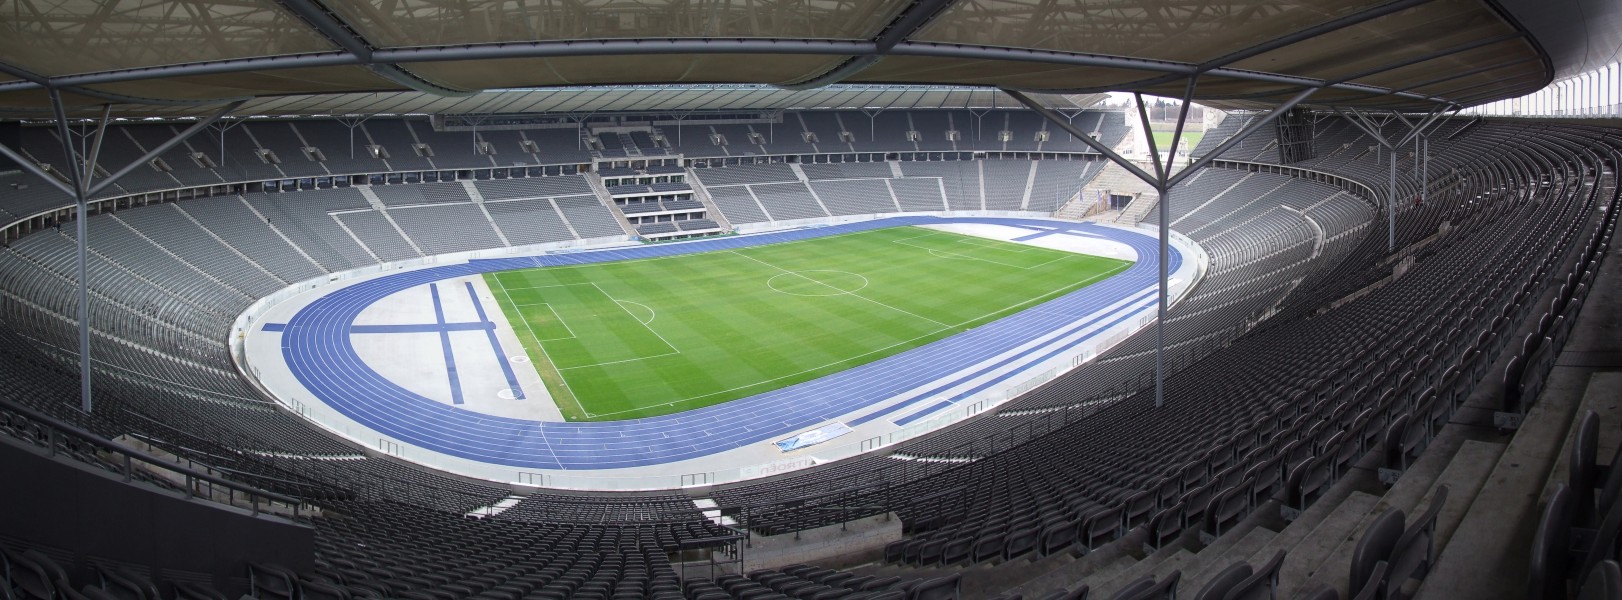 Olympiastadion Berlin - panorama